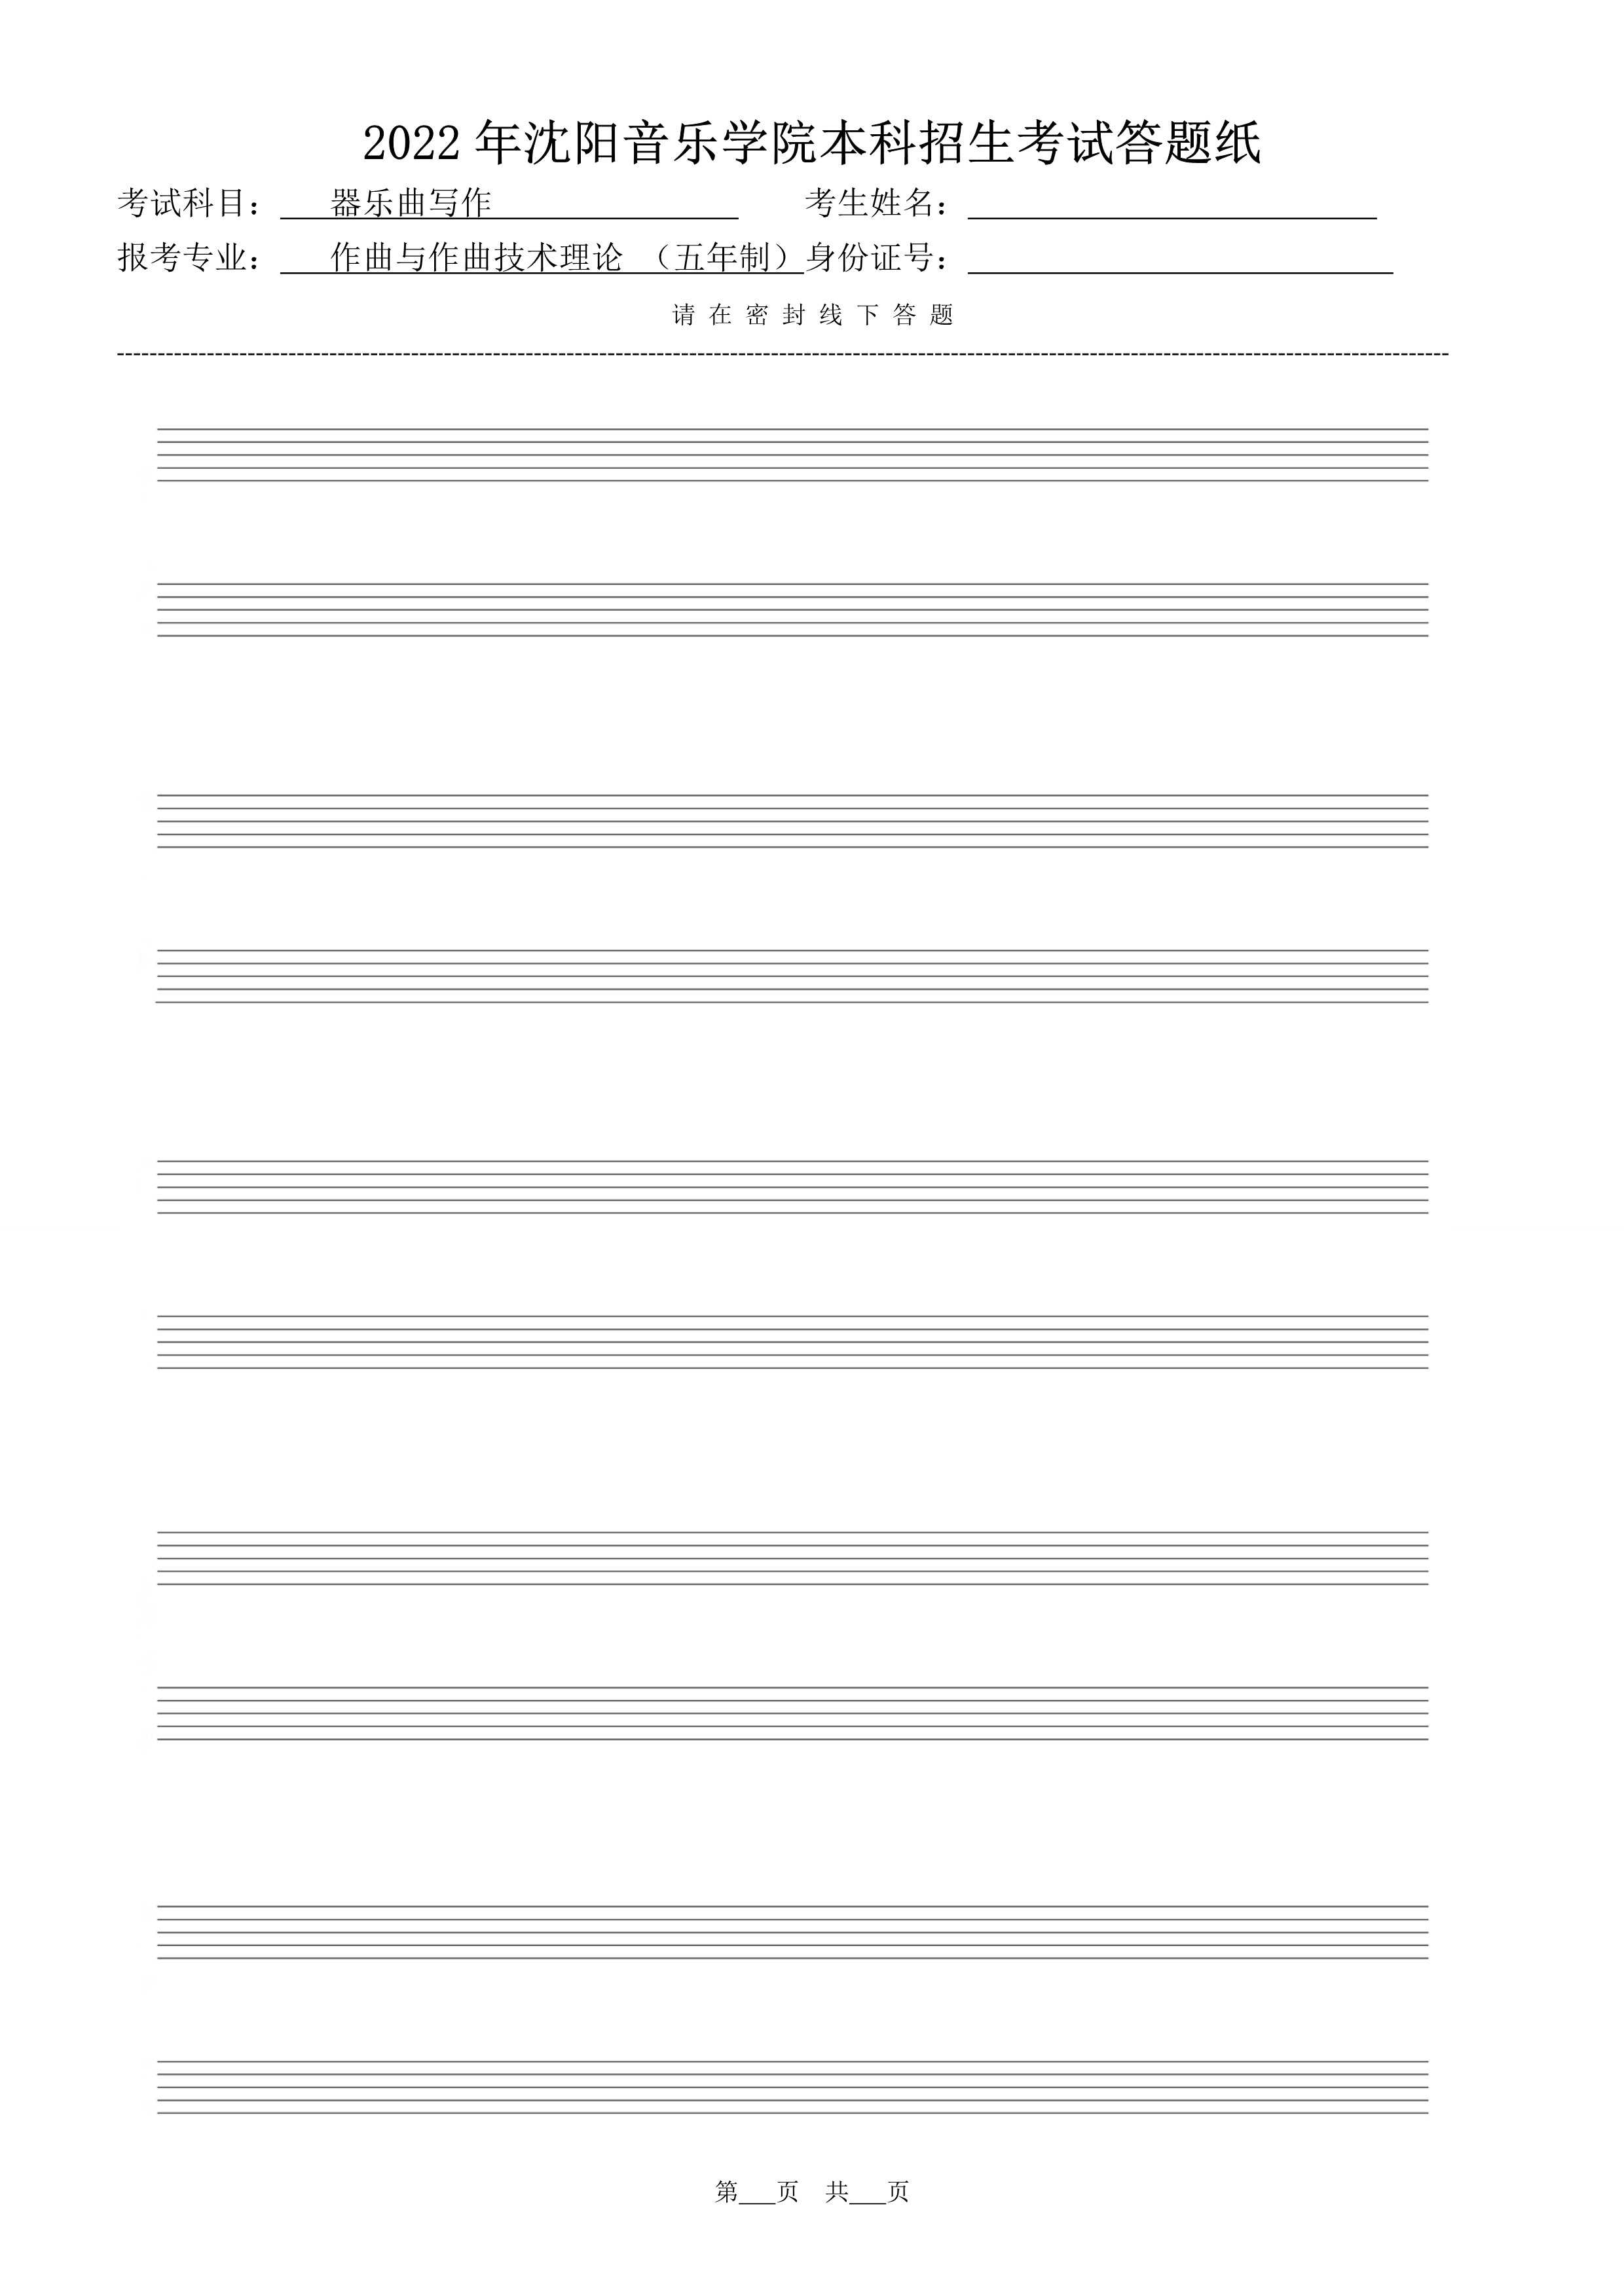 复试器乐曲写作答题纸（共10张）_2.jpg